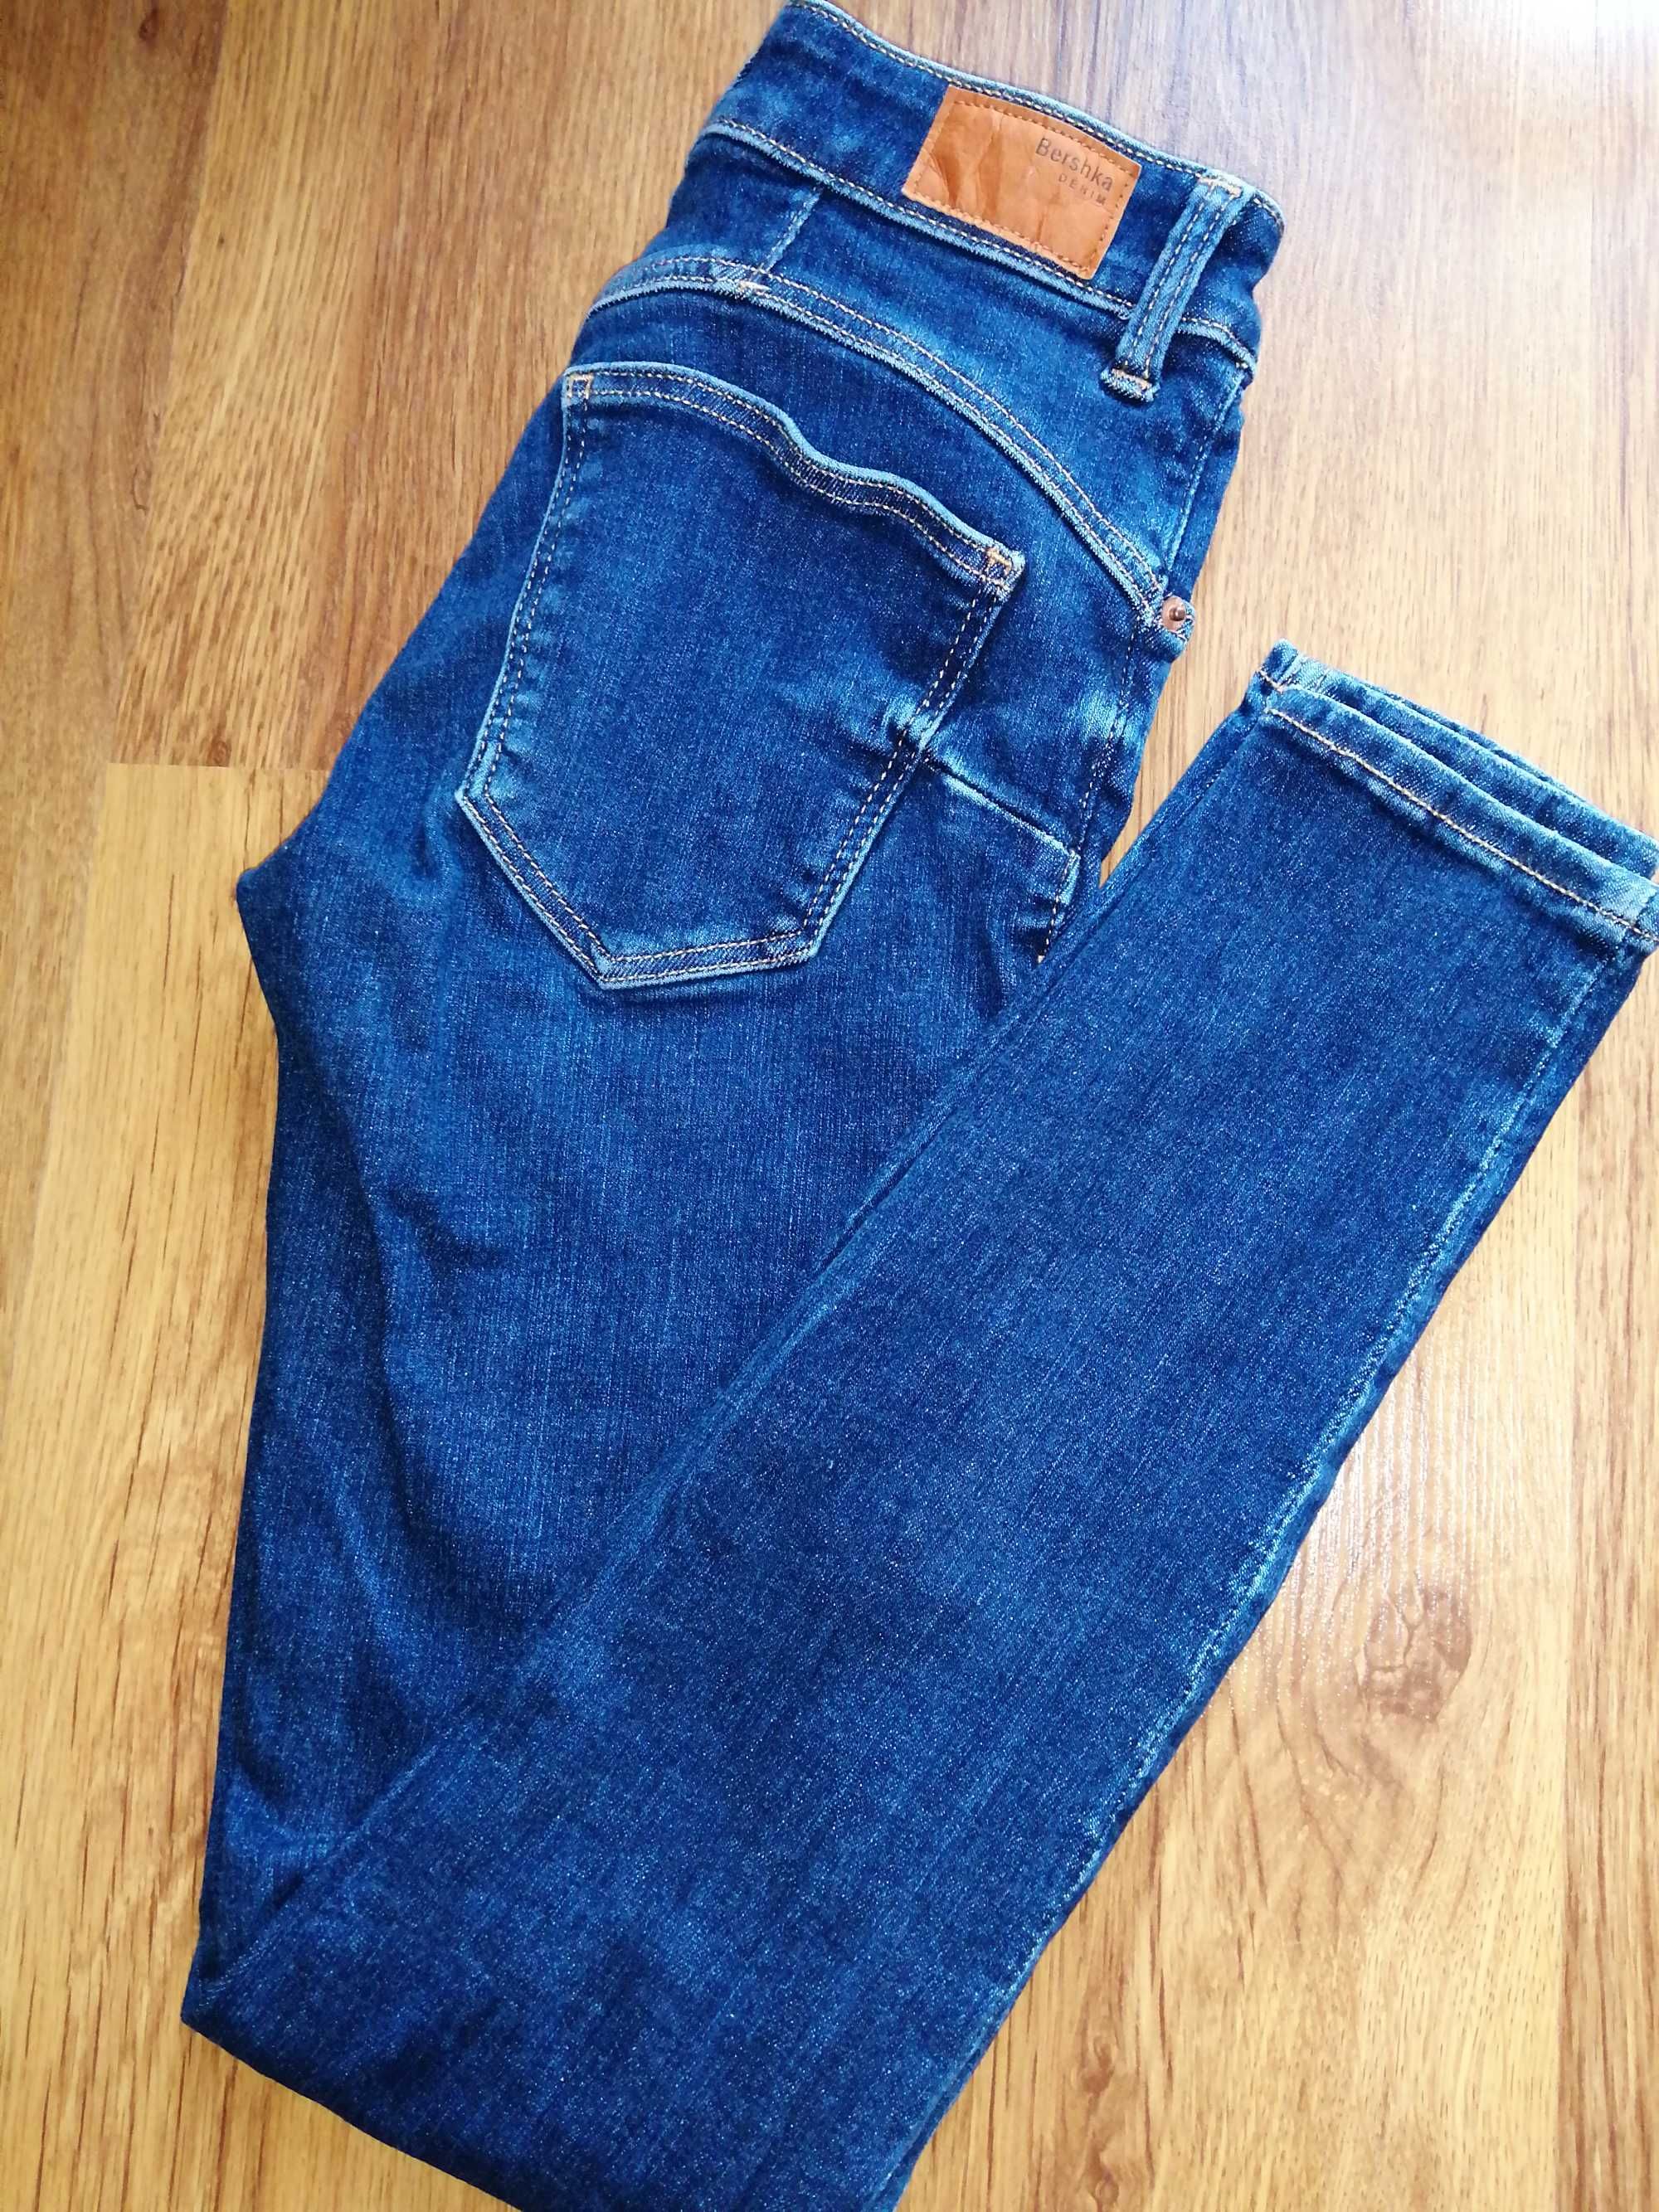 Spodnie jeansy Bershka, rozmiar 34 /xs